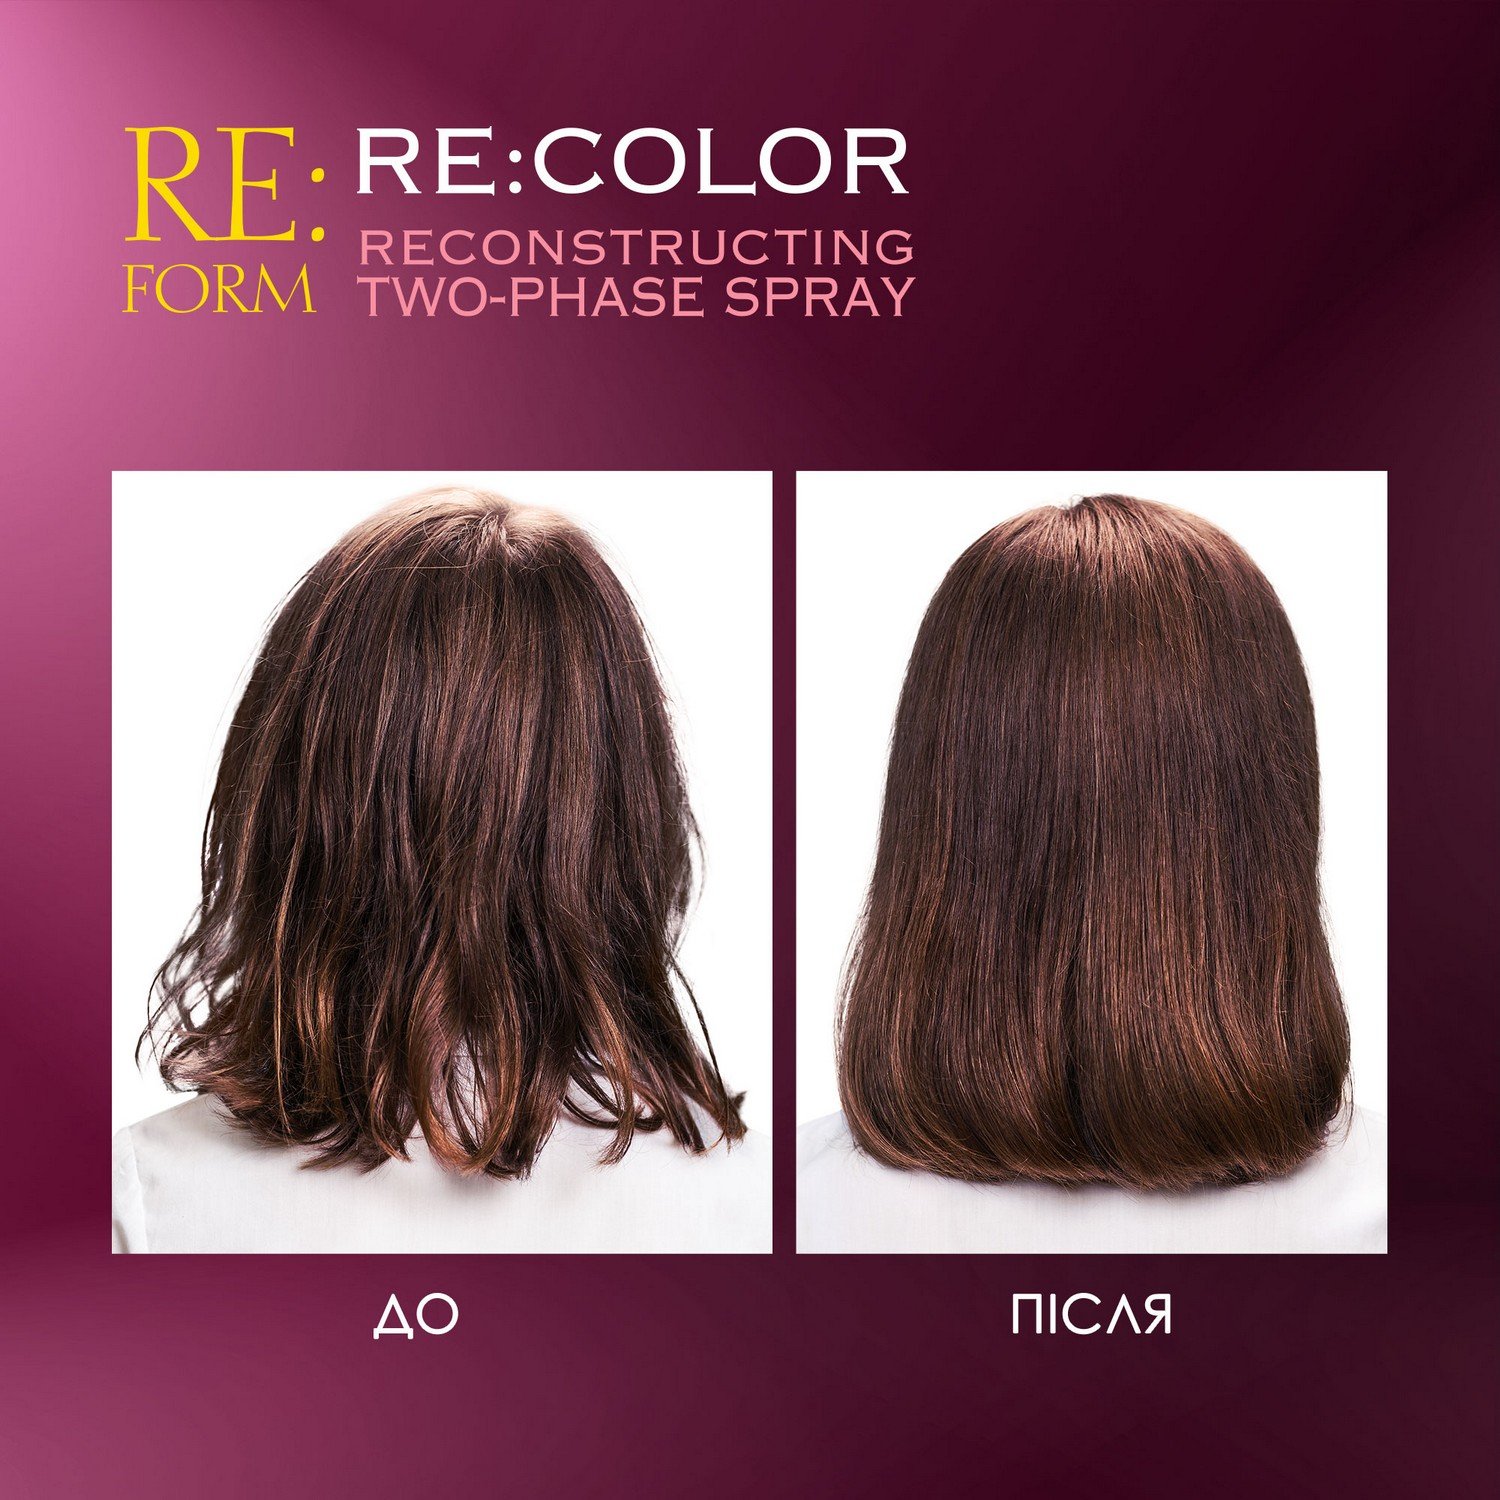 Реконструирующий двухфазный спрей Re:form Re:color Сохранение цвета и восстановление окрашенных волос, 200 мл - фото 7